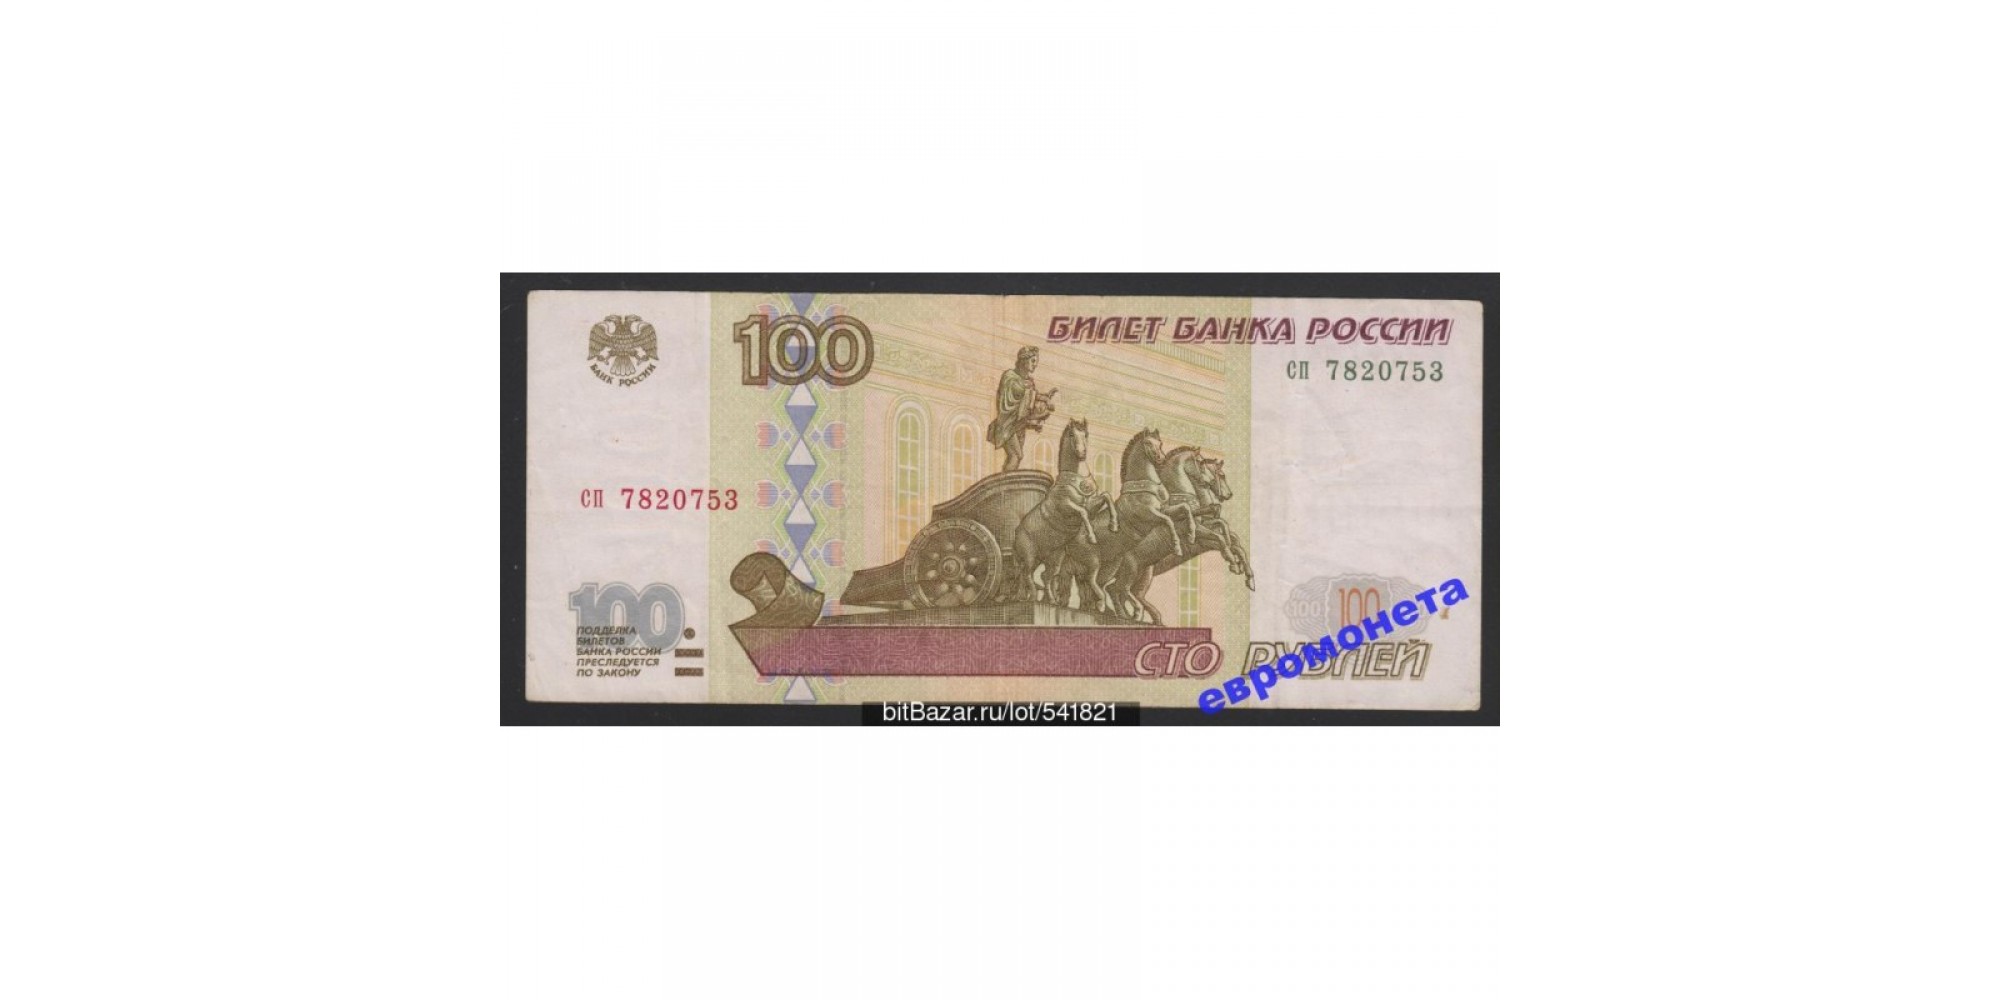 Россия 100 рублей 1997 год без модификации серия сп 7820753